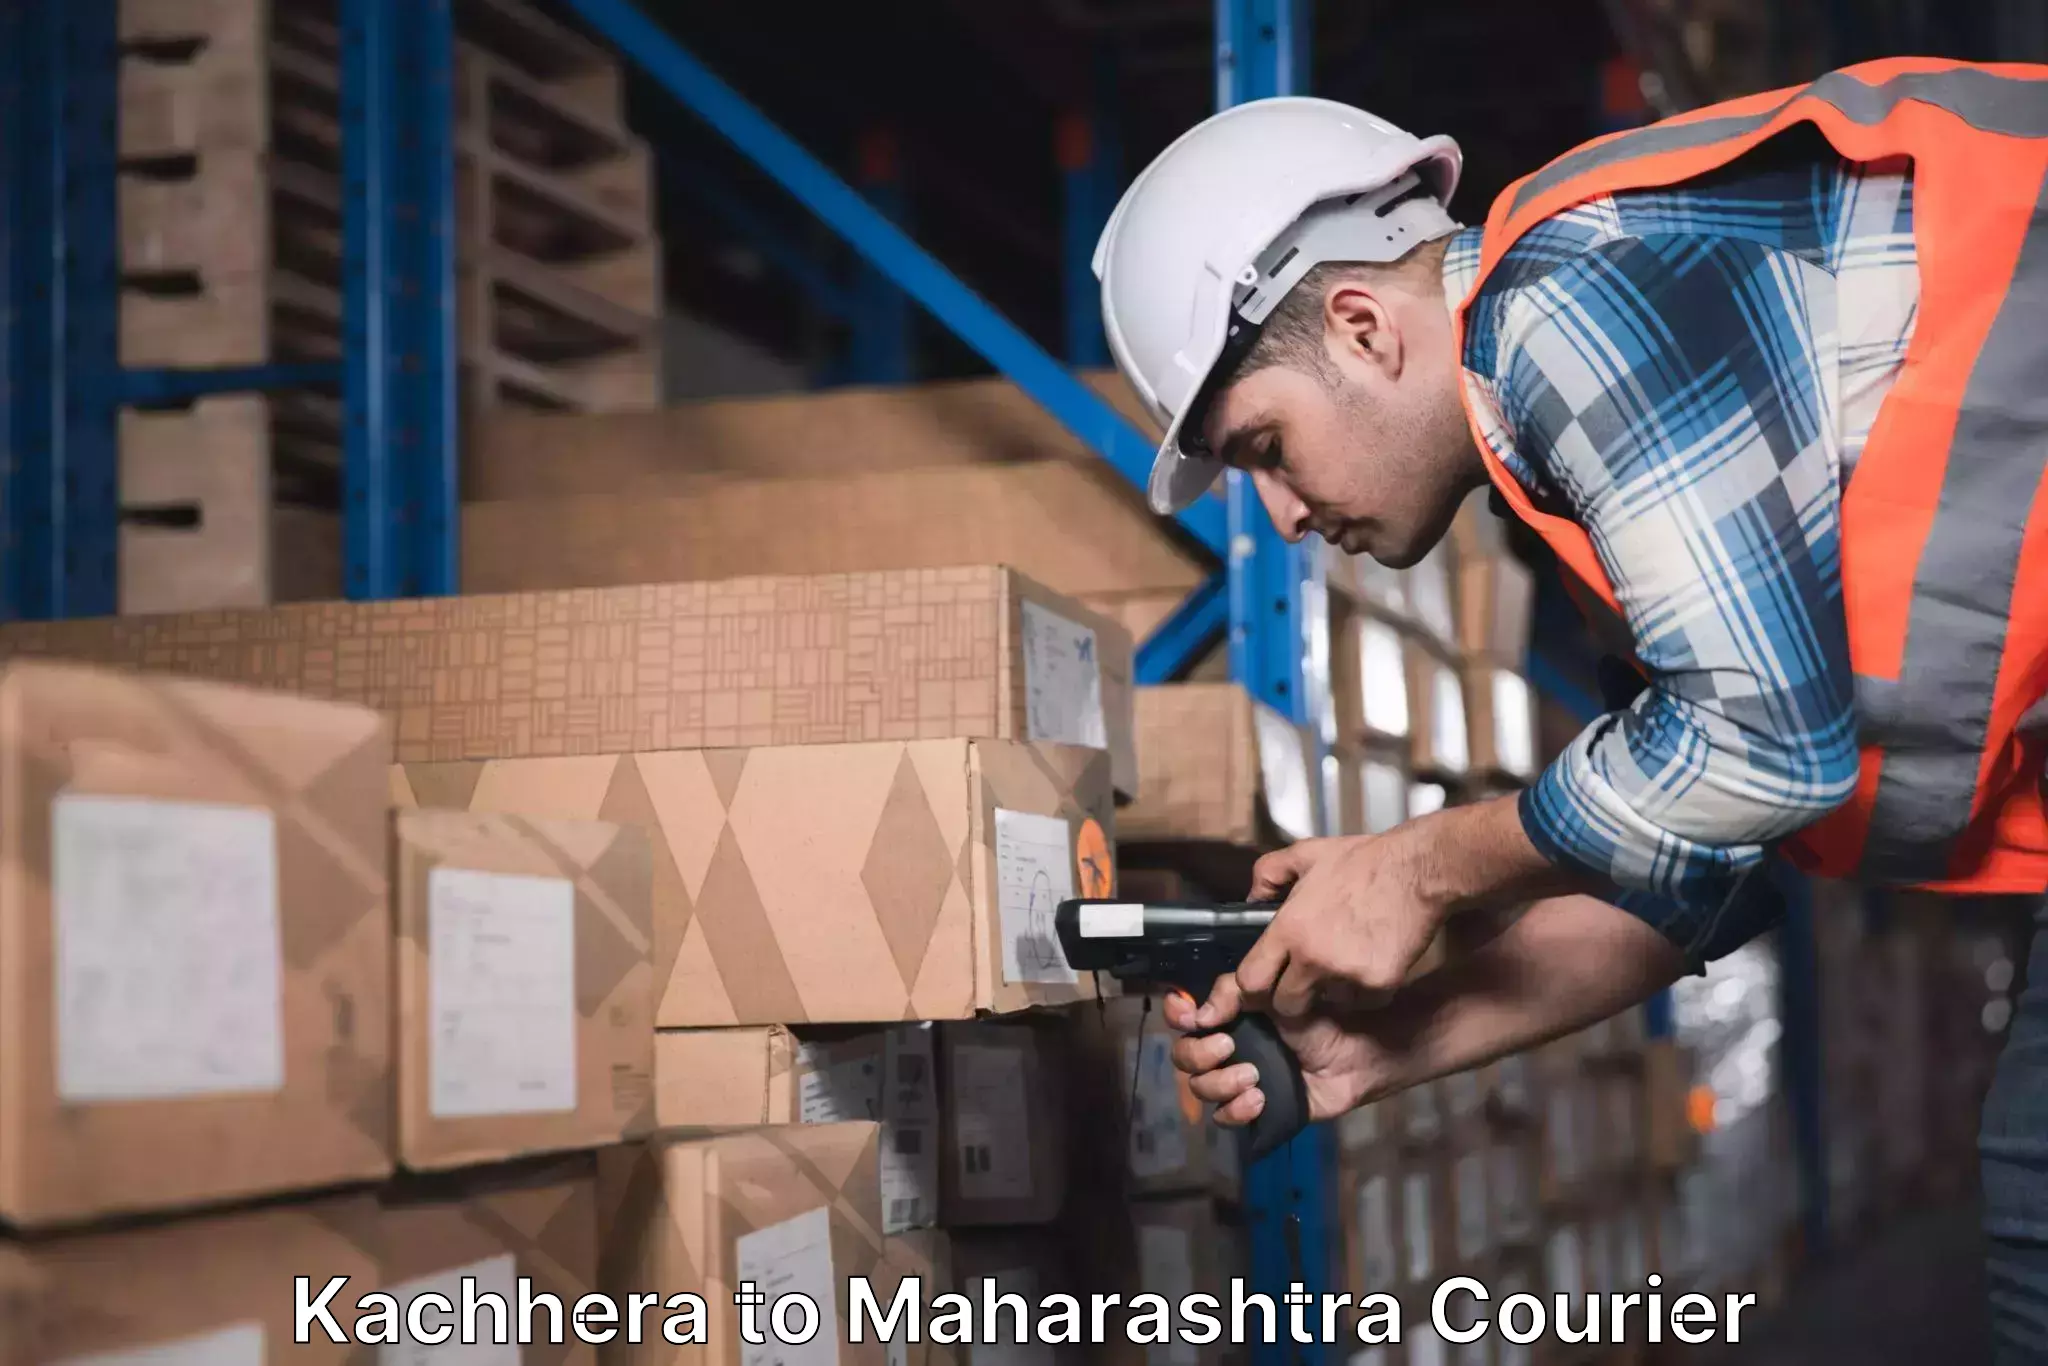 Customer-focused courier Kachhera to Maharashtra